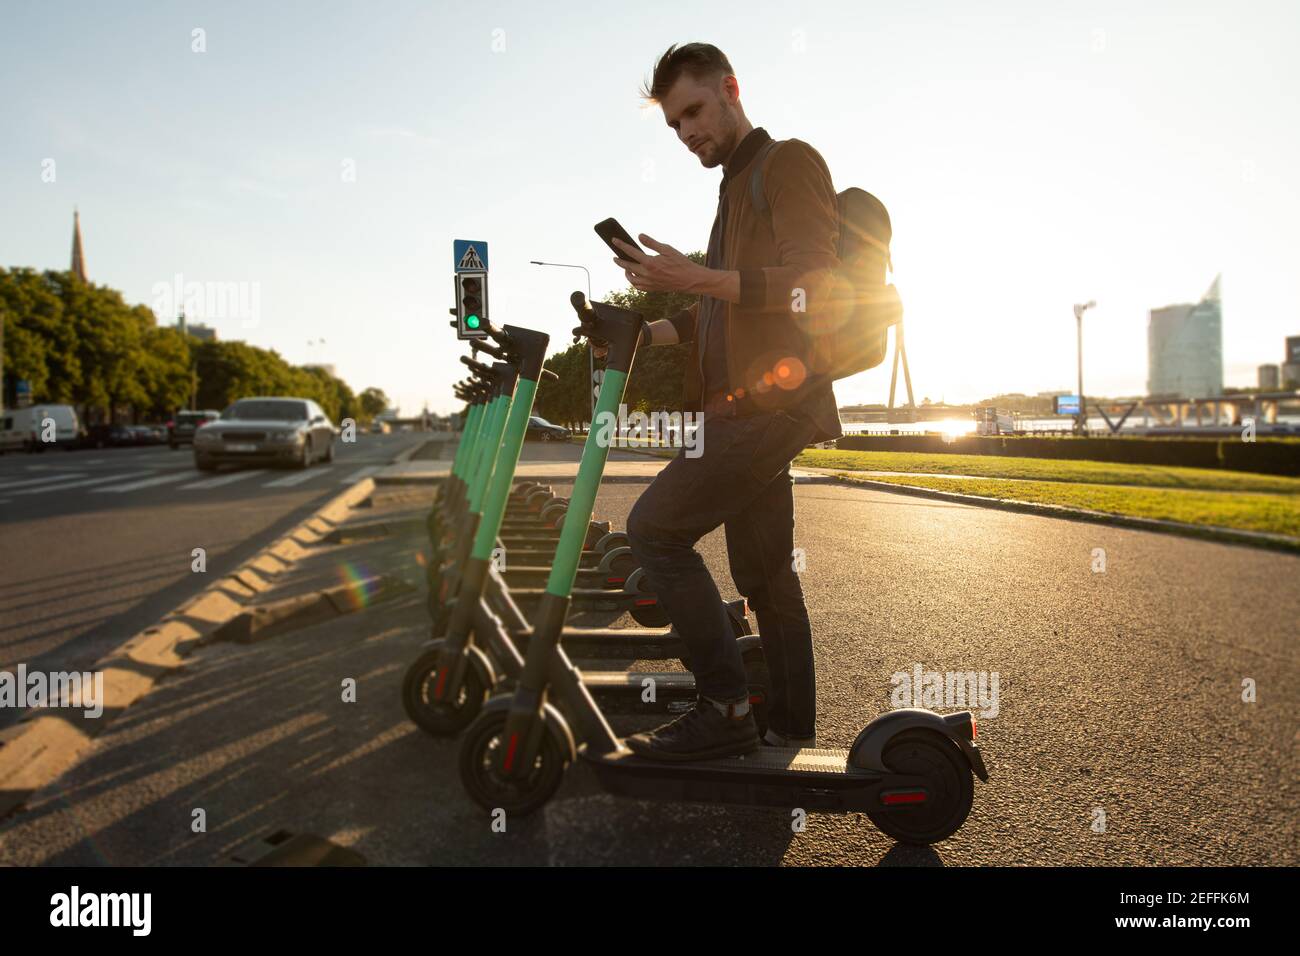 Transport écologique et durabilité dans les villes. Personne utilisant un scooter électrique nouvelle façon de mobilité urbaine. Les transports verts ont des objectifs neutres en matière de climat Banque D'Images